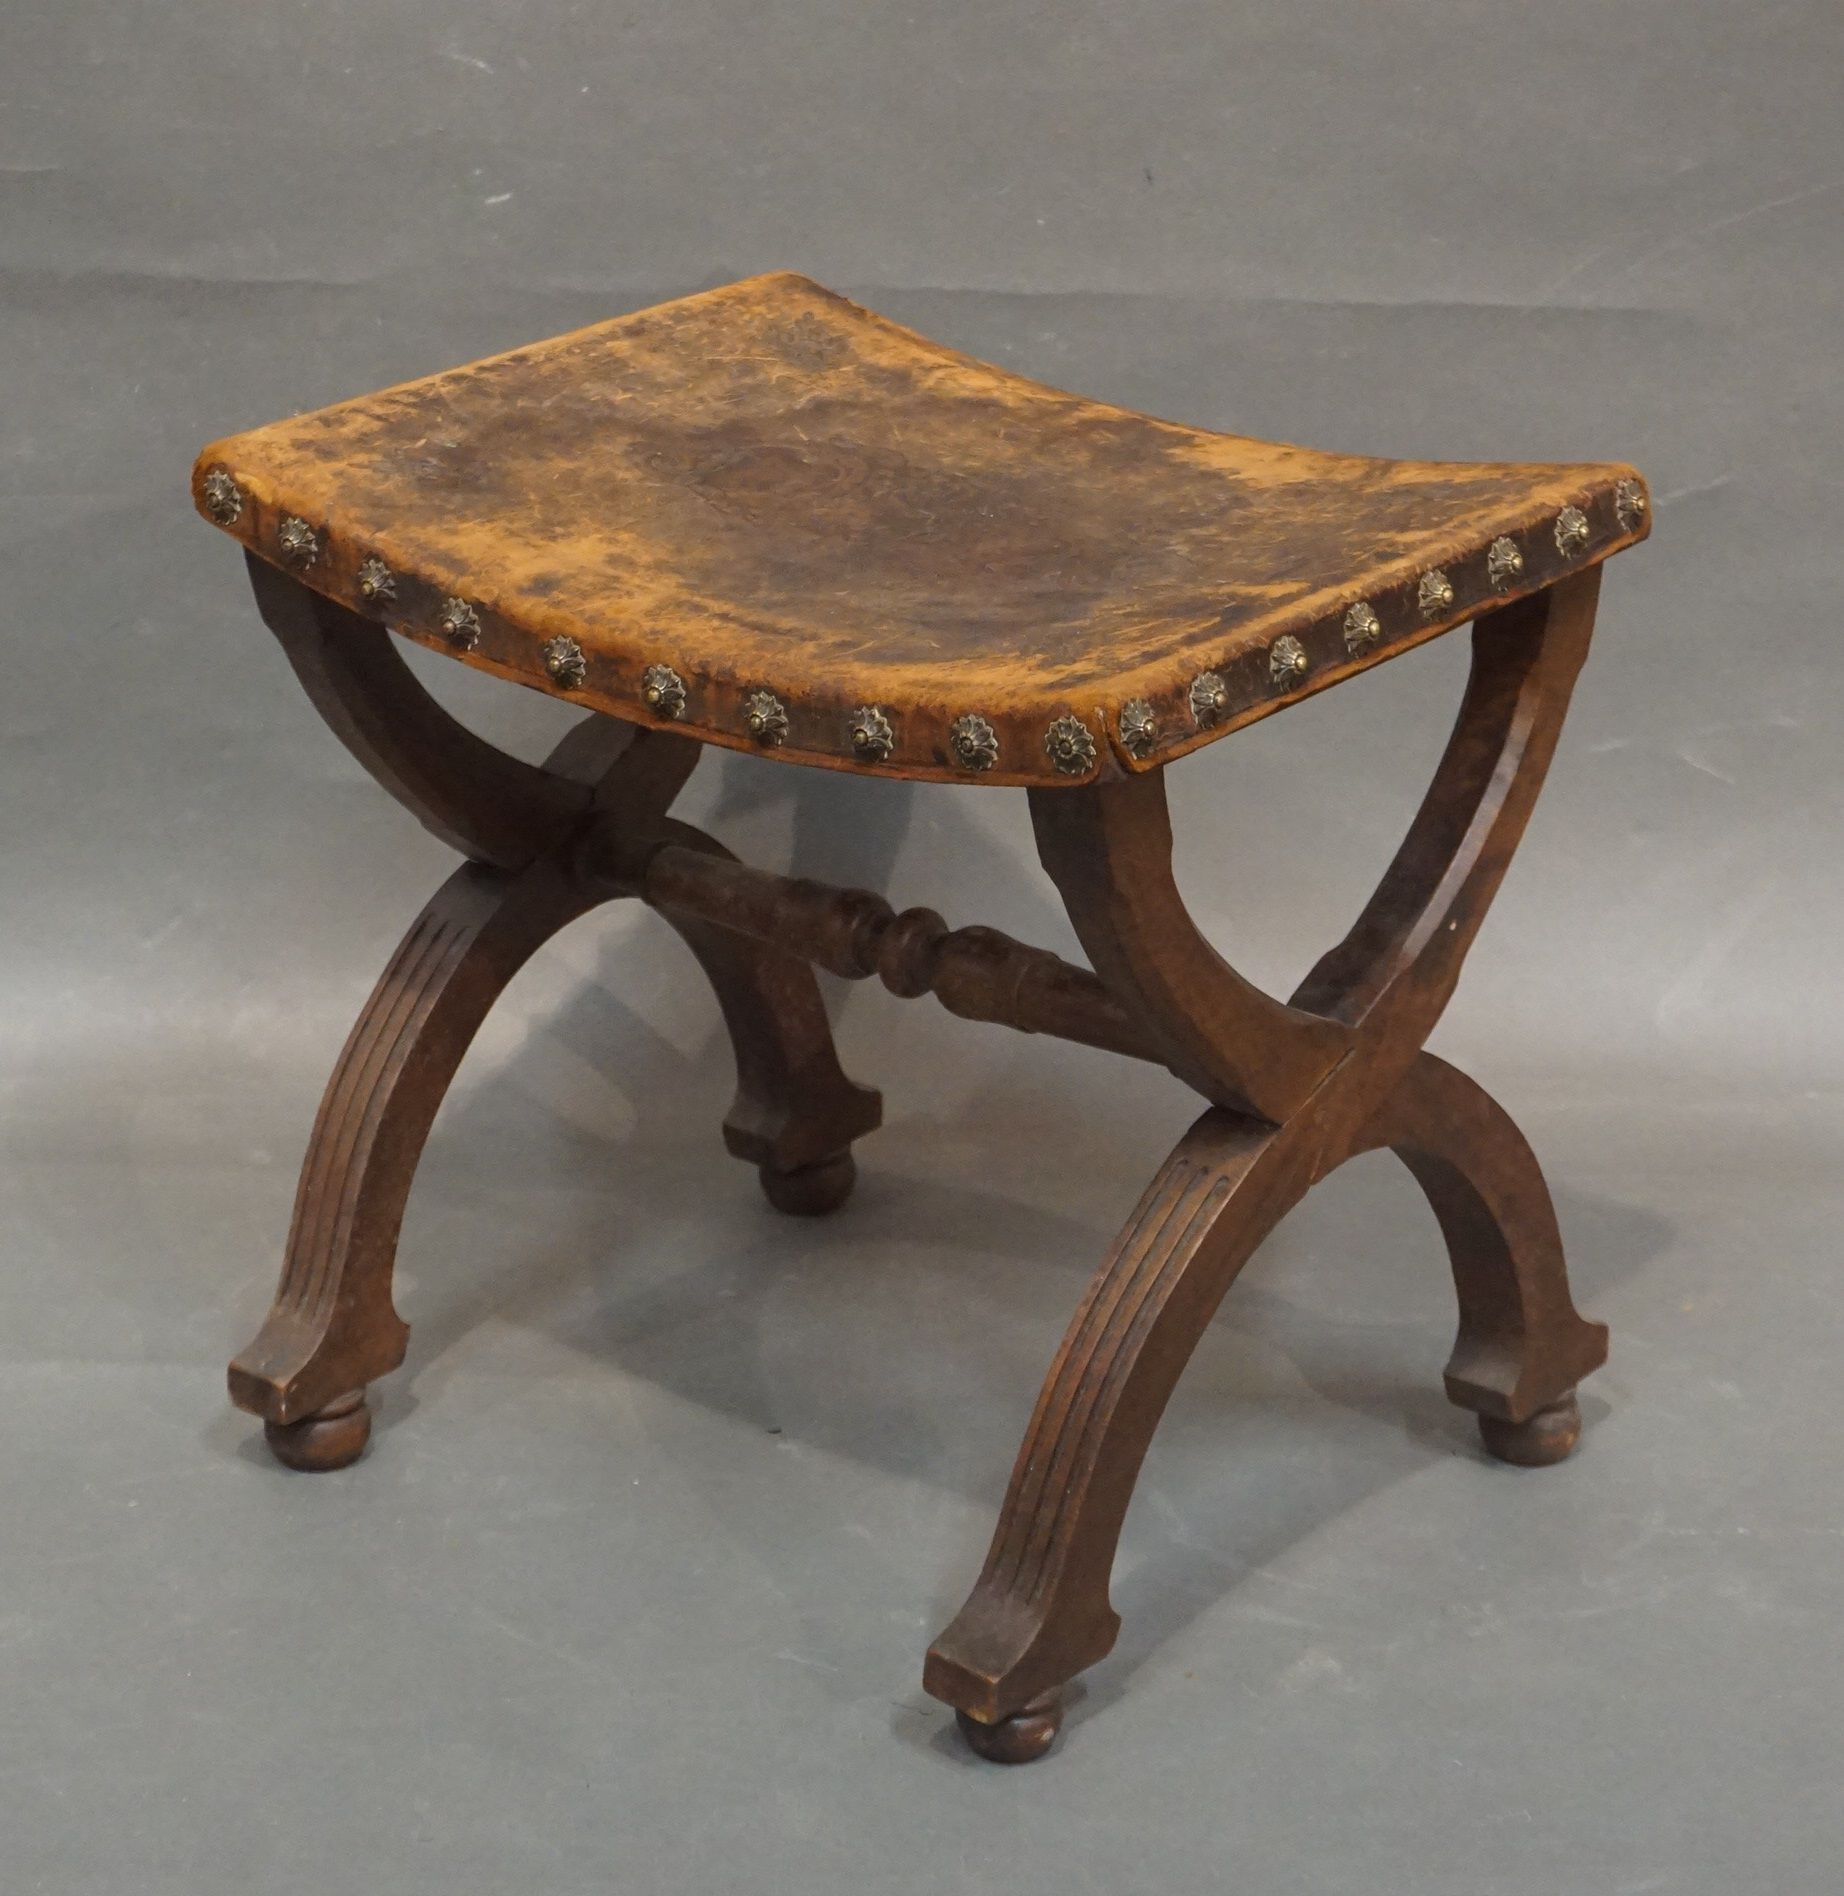 Null Hocker aus Naturholz, Sitzfläche aus Leder mit Chimären-Dekor. 45x48x37 cm